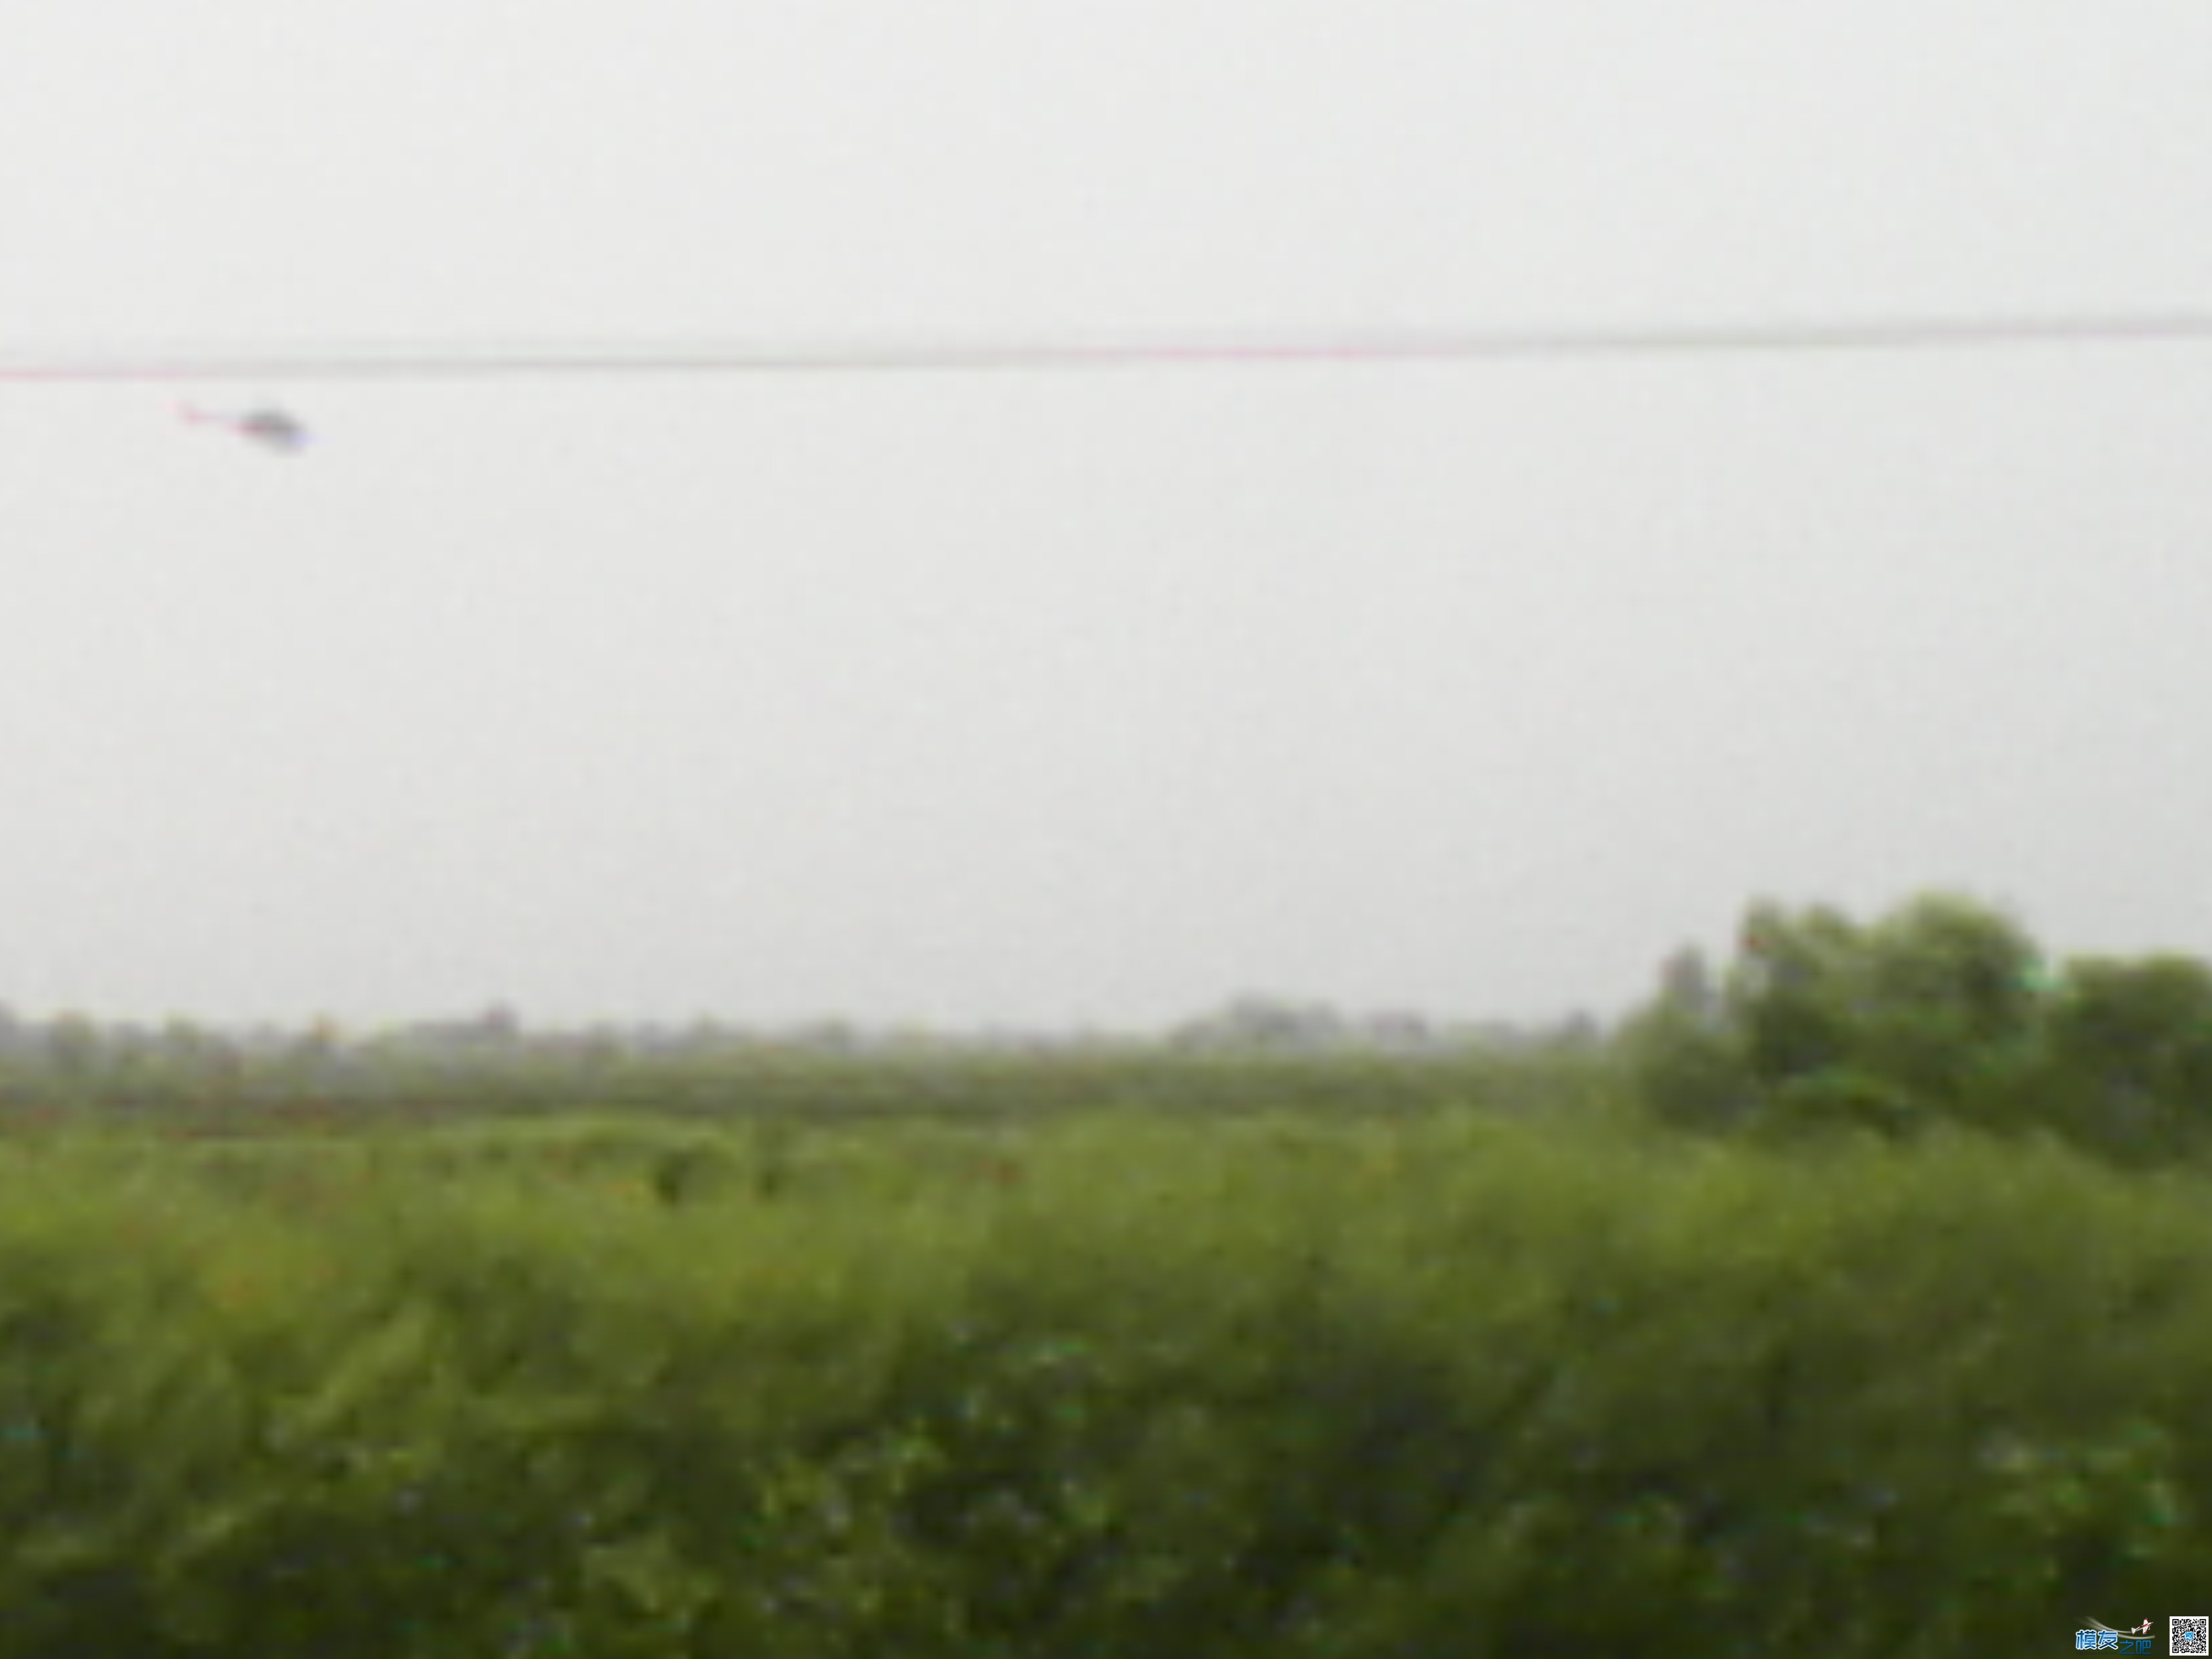 打药的小直升机 直升机,看见了,24k,不清晰,螺旋桨 作者:24k纯帅 1770 